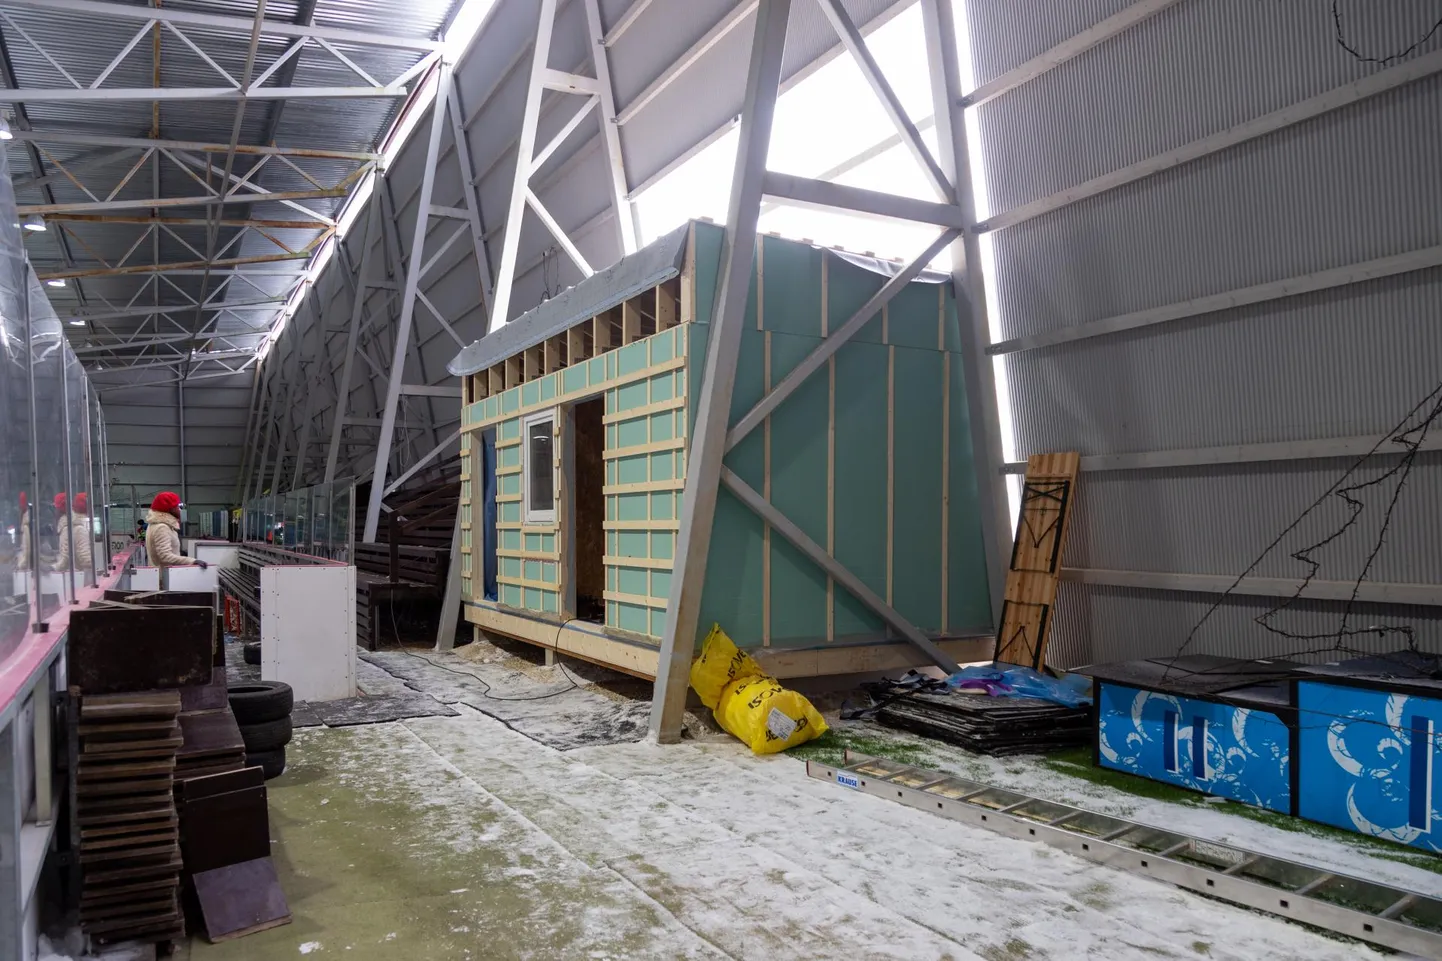 Viljandi jäähall saab uue elementmaja, kuhu tulevad riietusruum, neli duširuumi ja kaks tualetti.